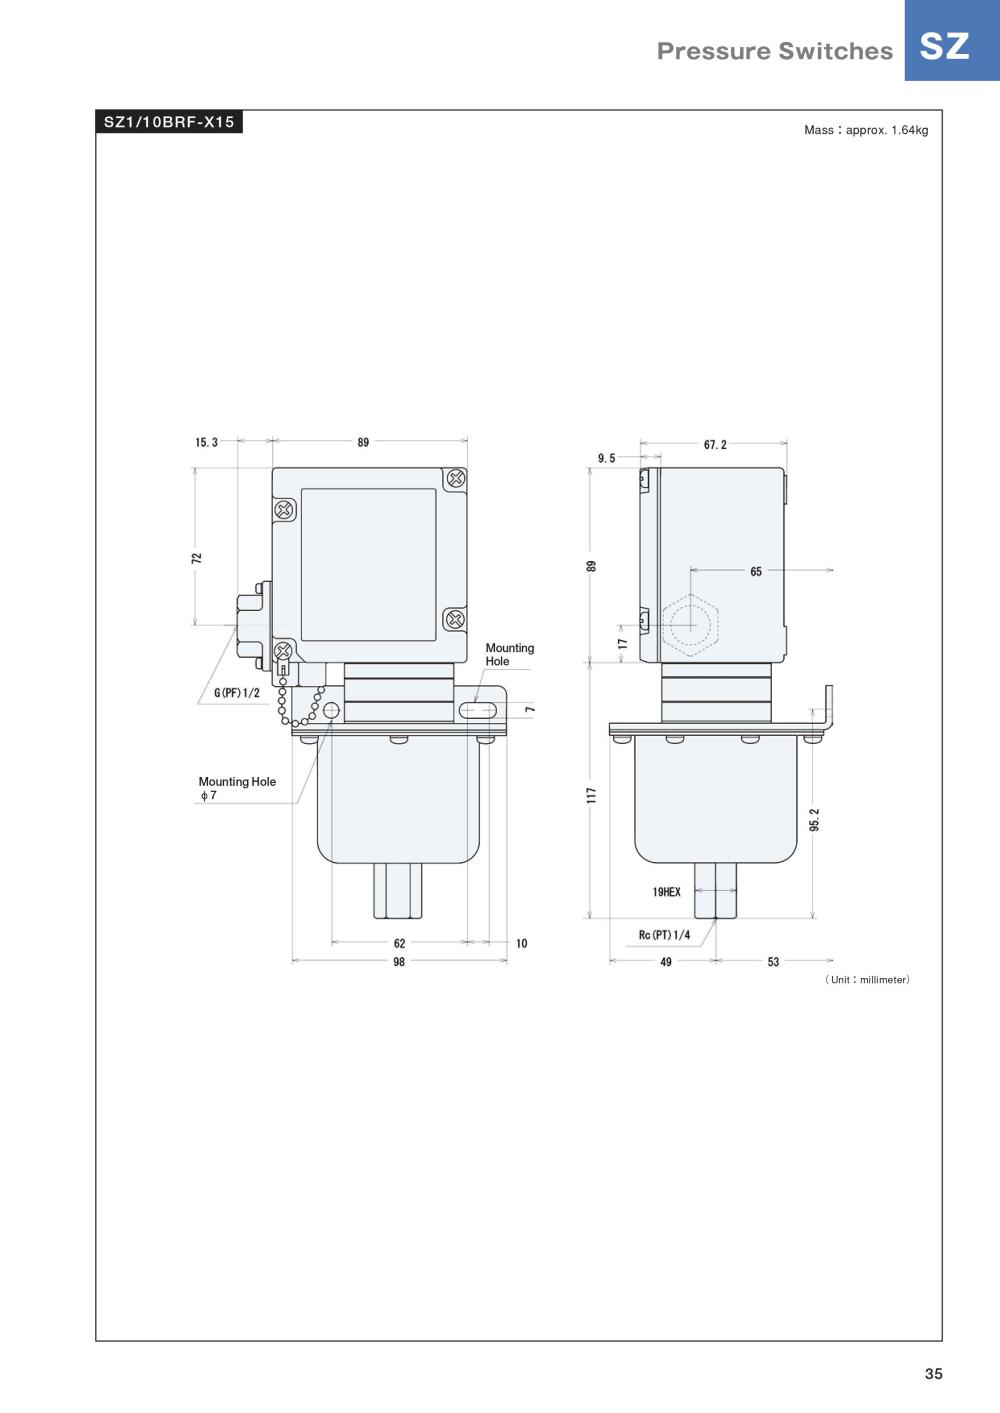 TAIHEI BOEKI Compound-Pressure Switch SZ-BR Series